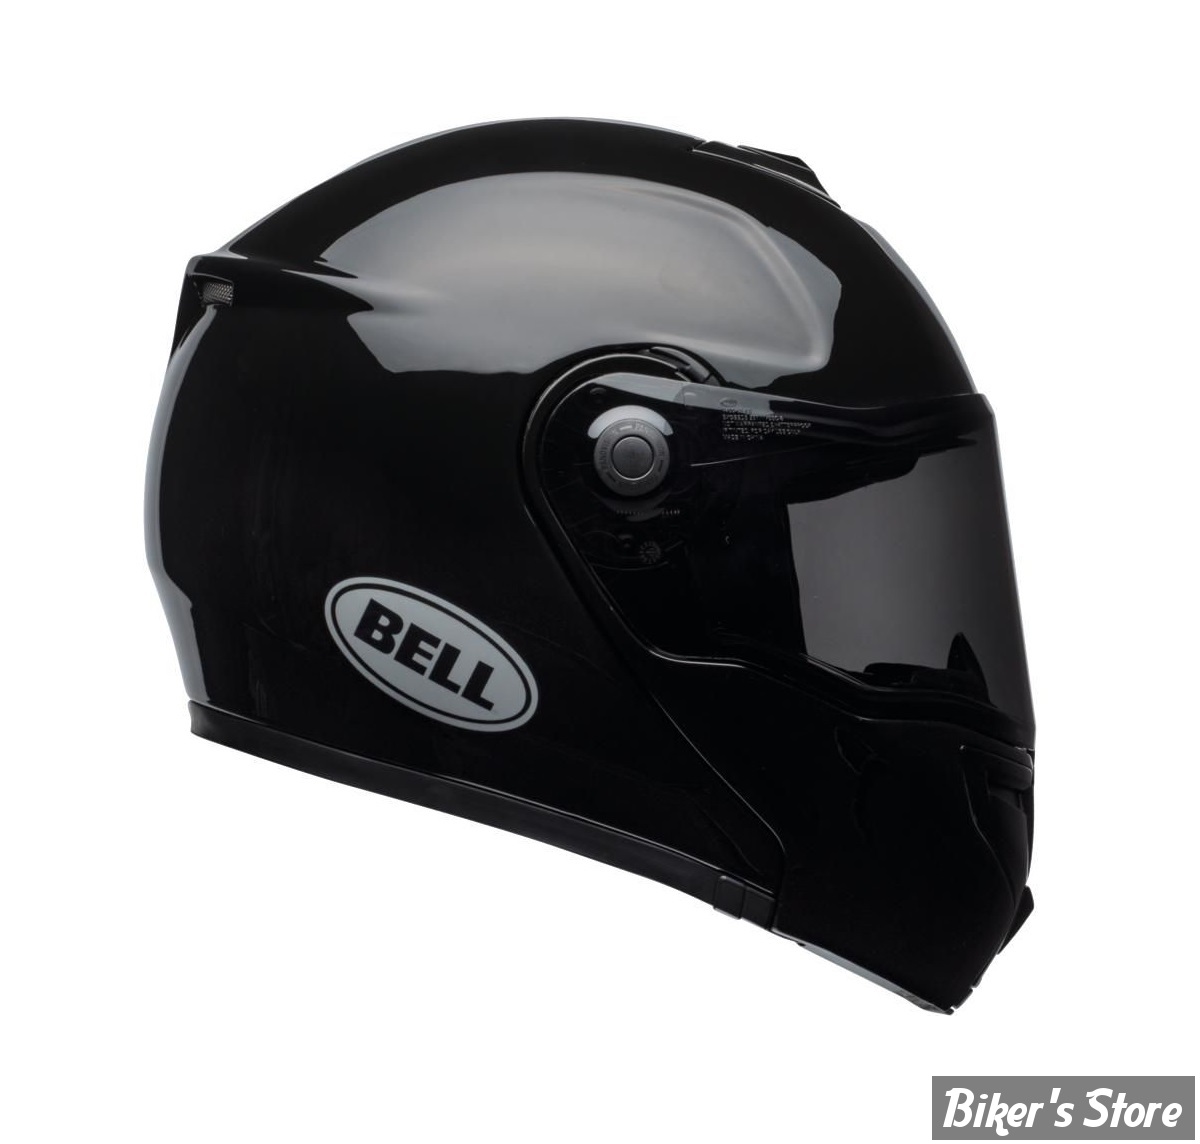 - CASQUE BELL - SRT Modular Helmet - CONVERTIBLE - COULEUR : NOIR BRILLANT - TAILLE : XXL